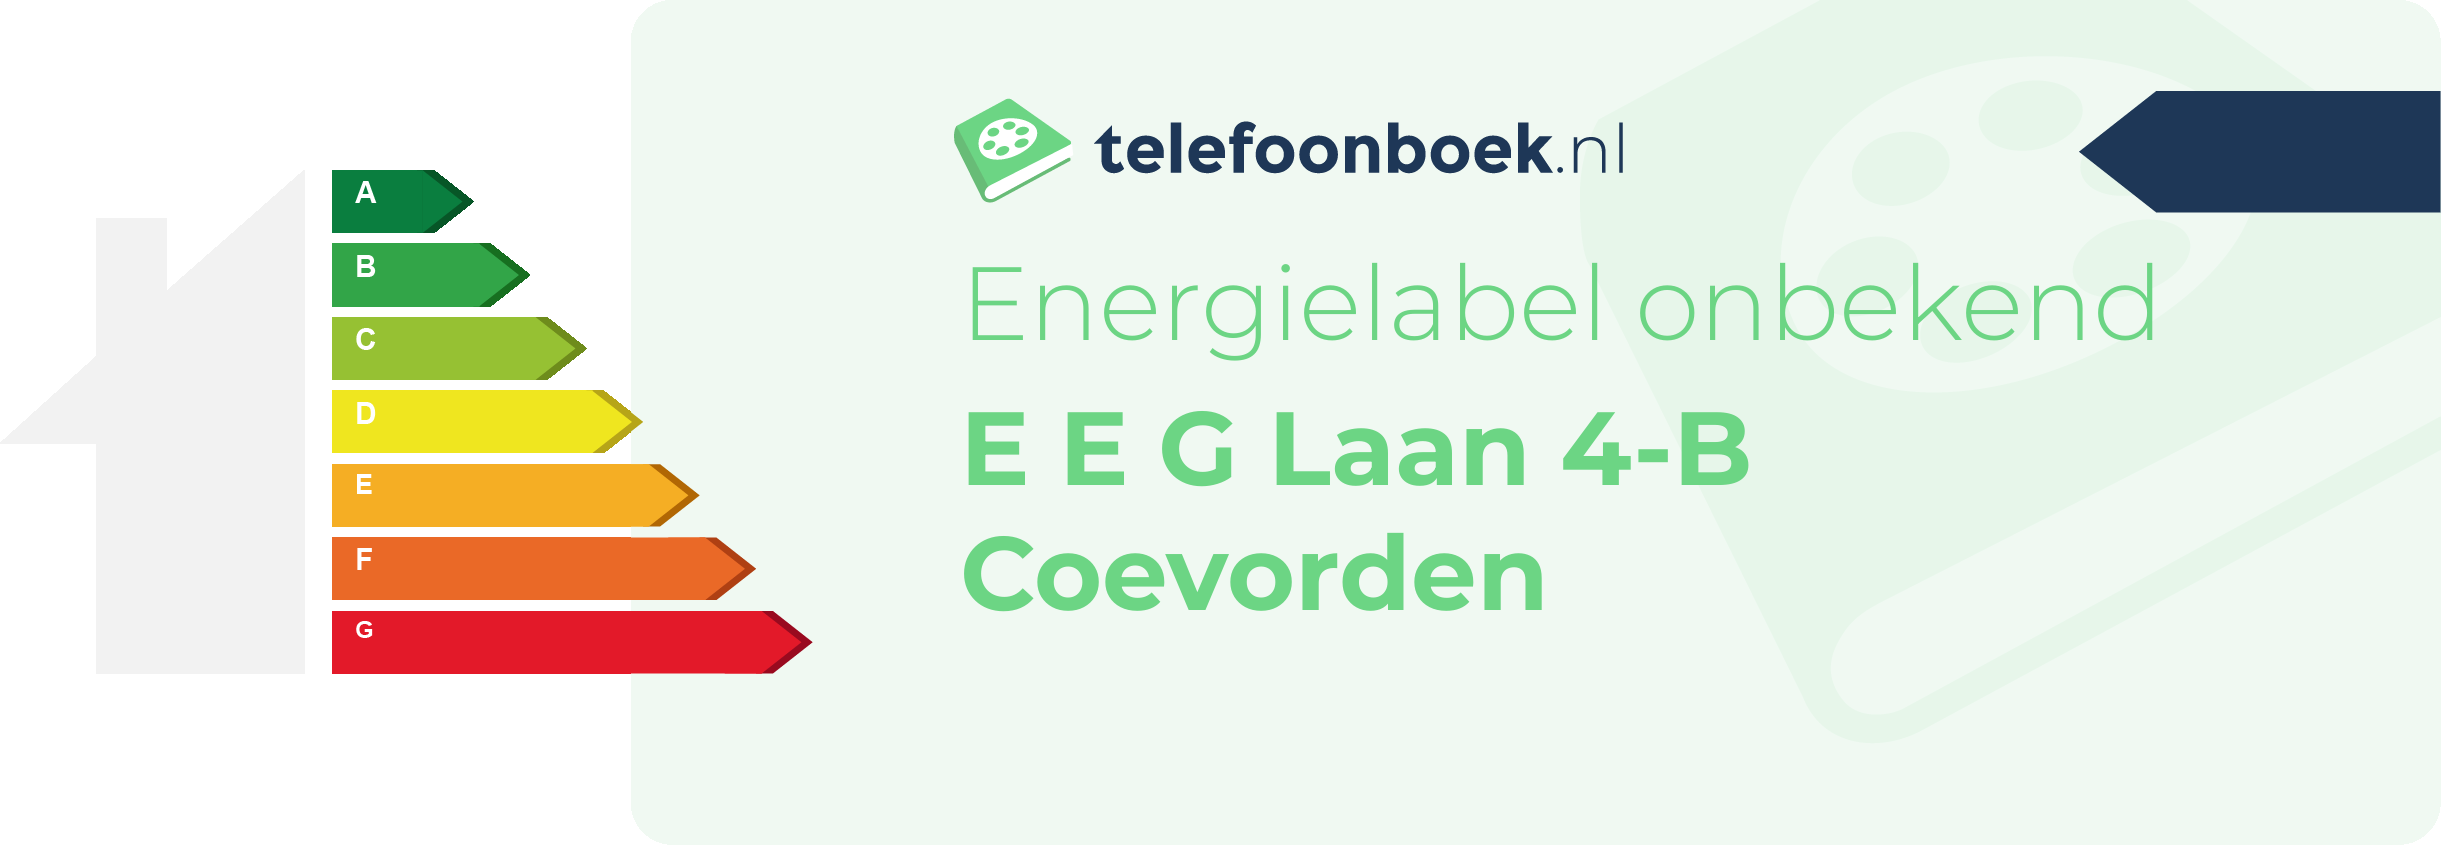 Energielabel E E G Laan 4-B Coevorden